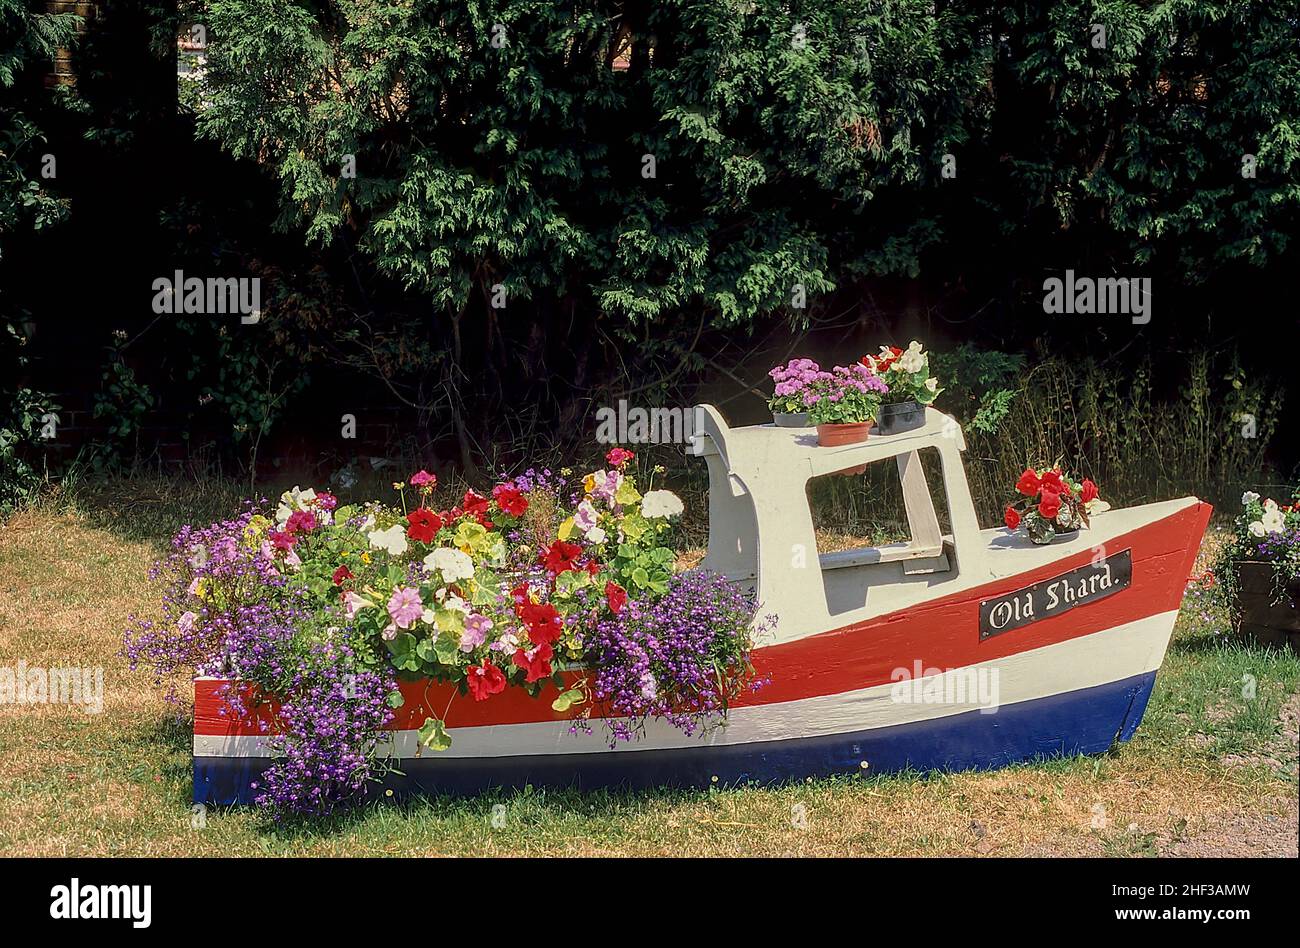 Pequeño barco utilizado para una exhibición de flores al borde de la carretera. Llamado Old Shard después de que el viejo puente de peaje fue demolido y reemplazado por un nuevo puente moderno de peaje gratuito. Foto de stock